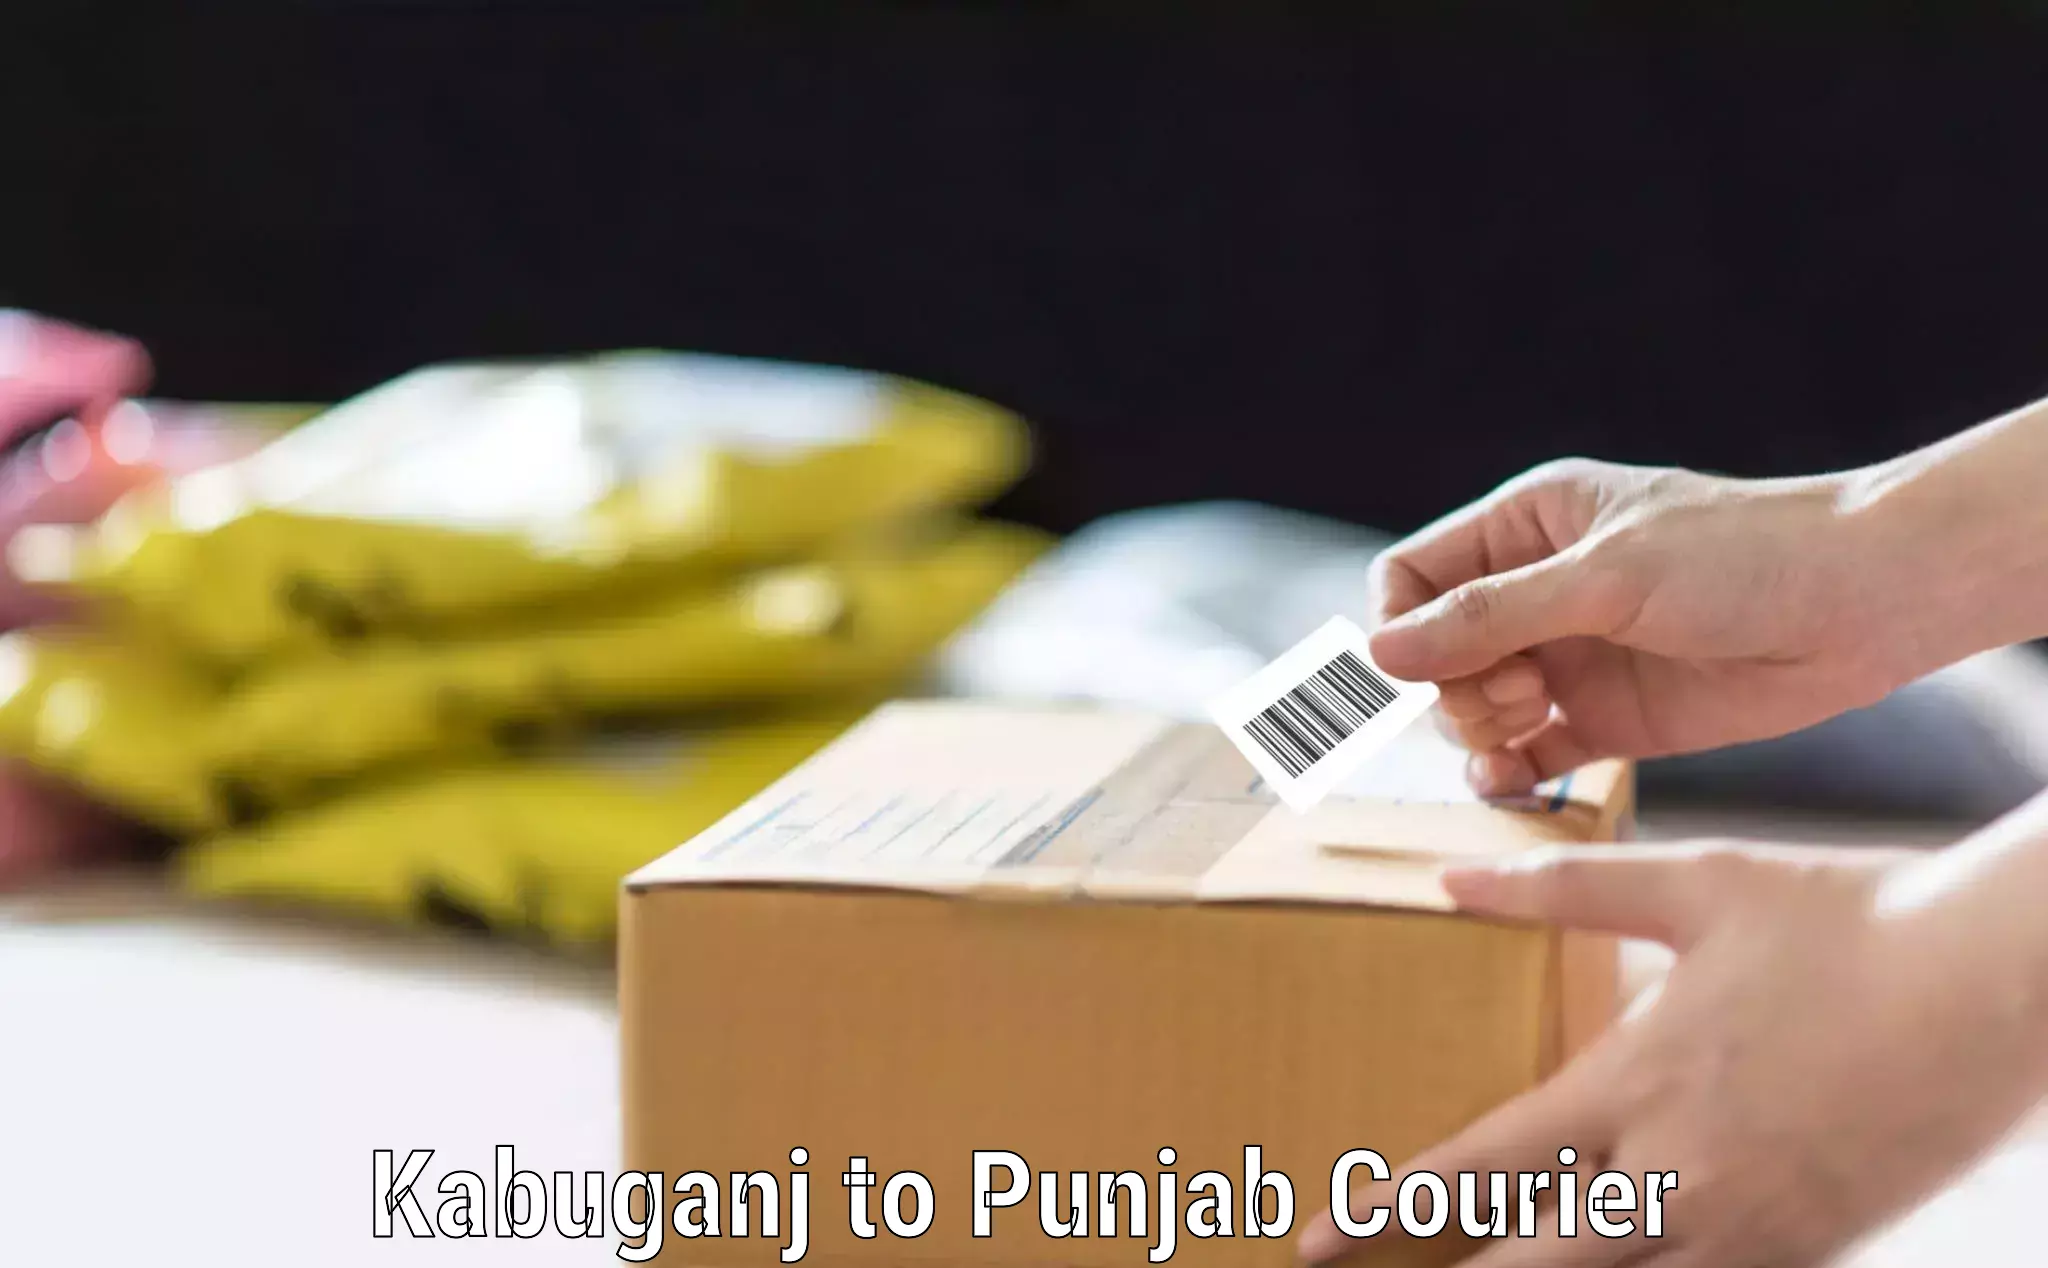 Baggage transport technology Kabuganj to Punjab